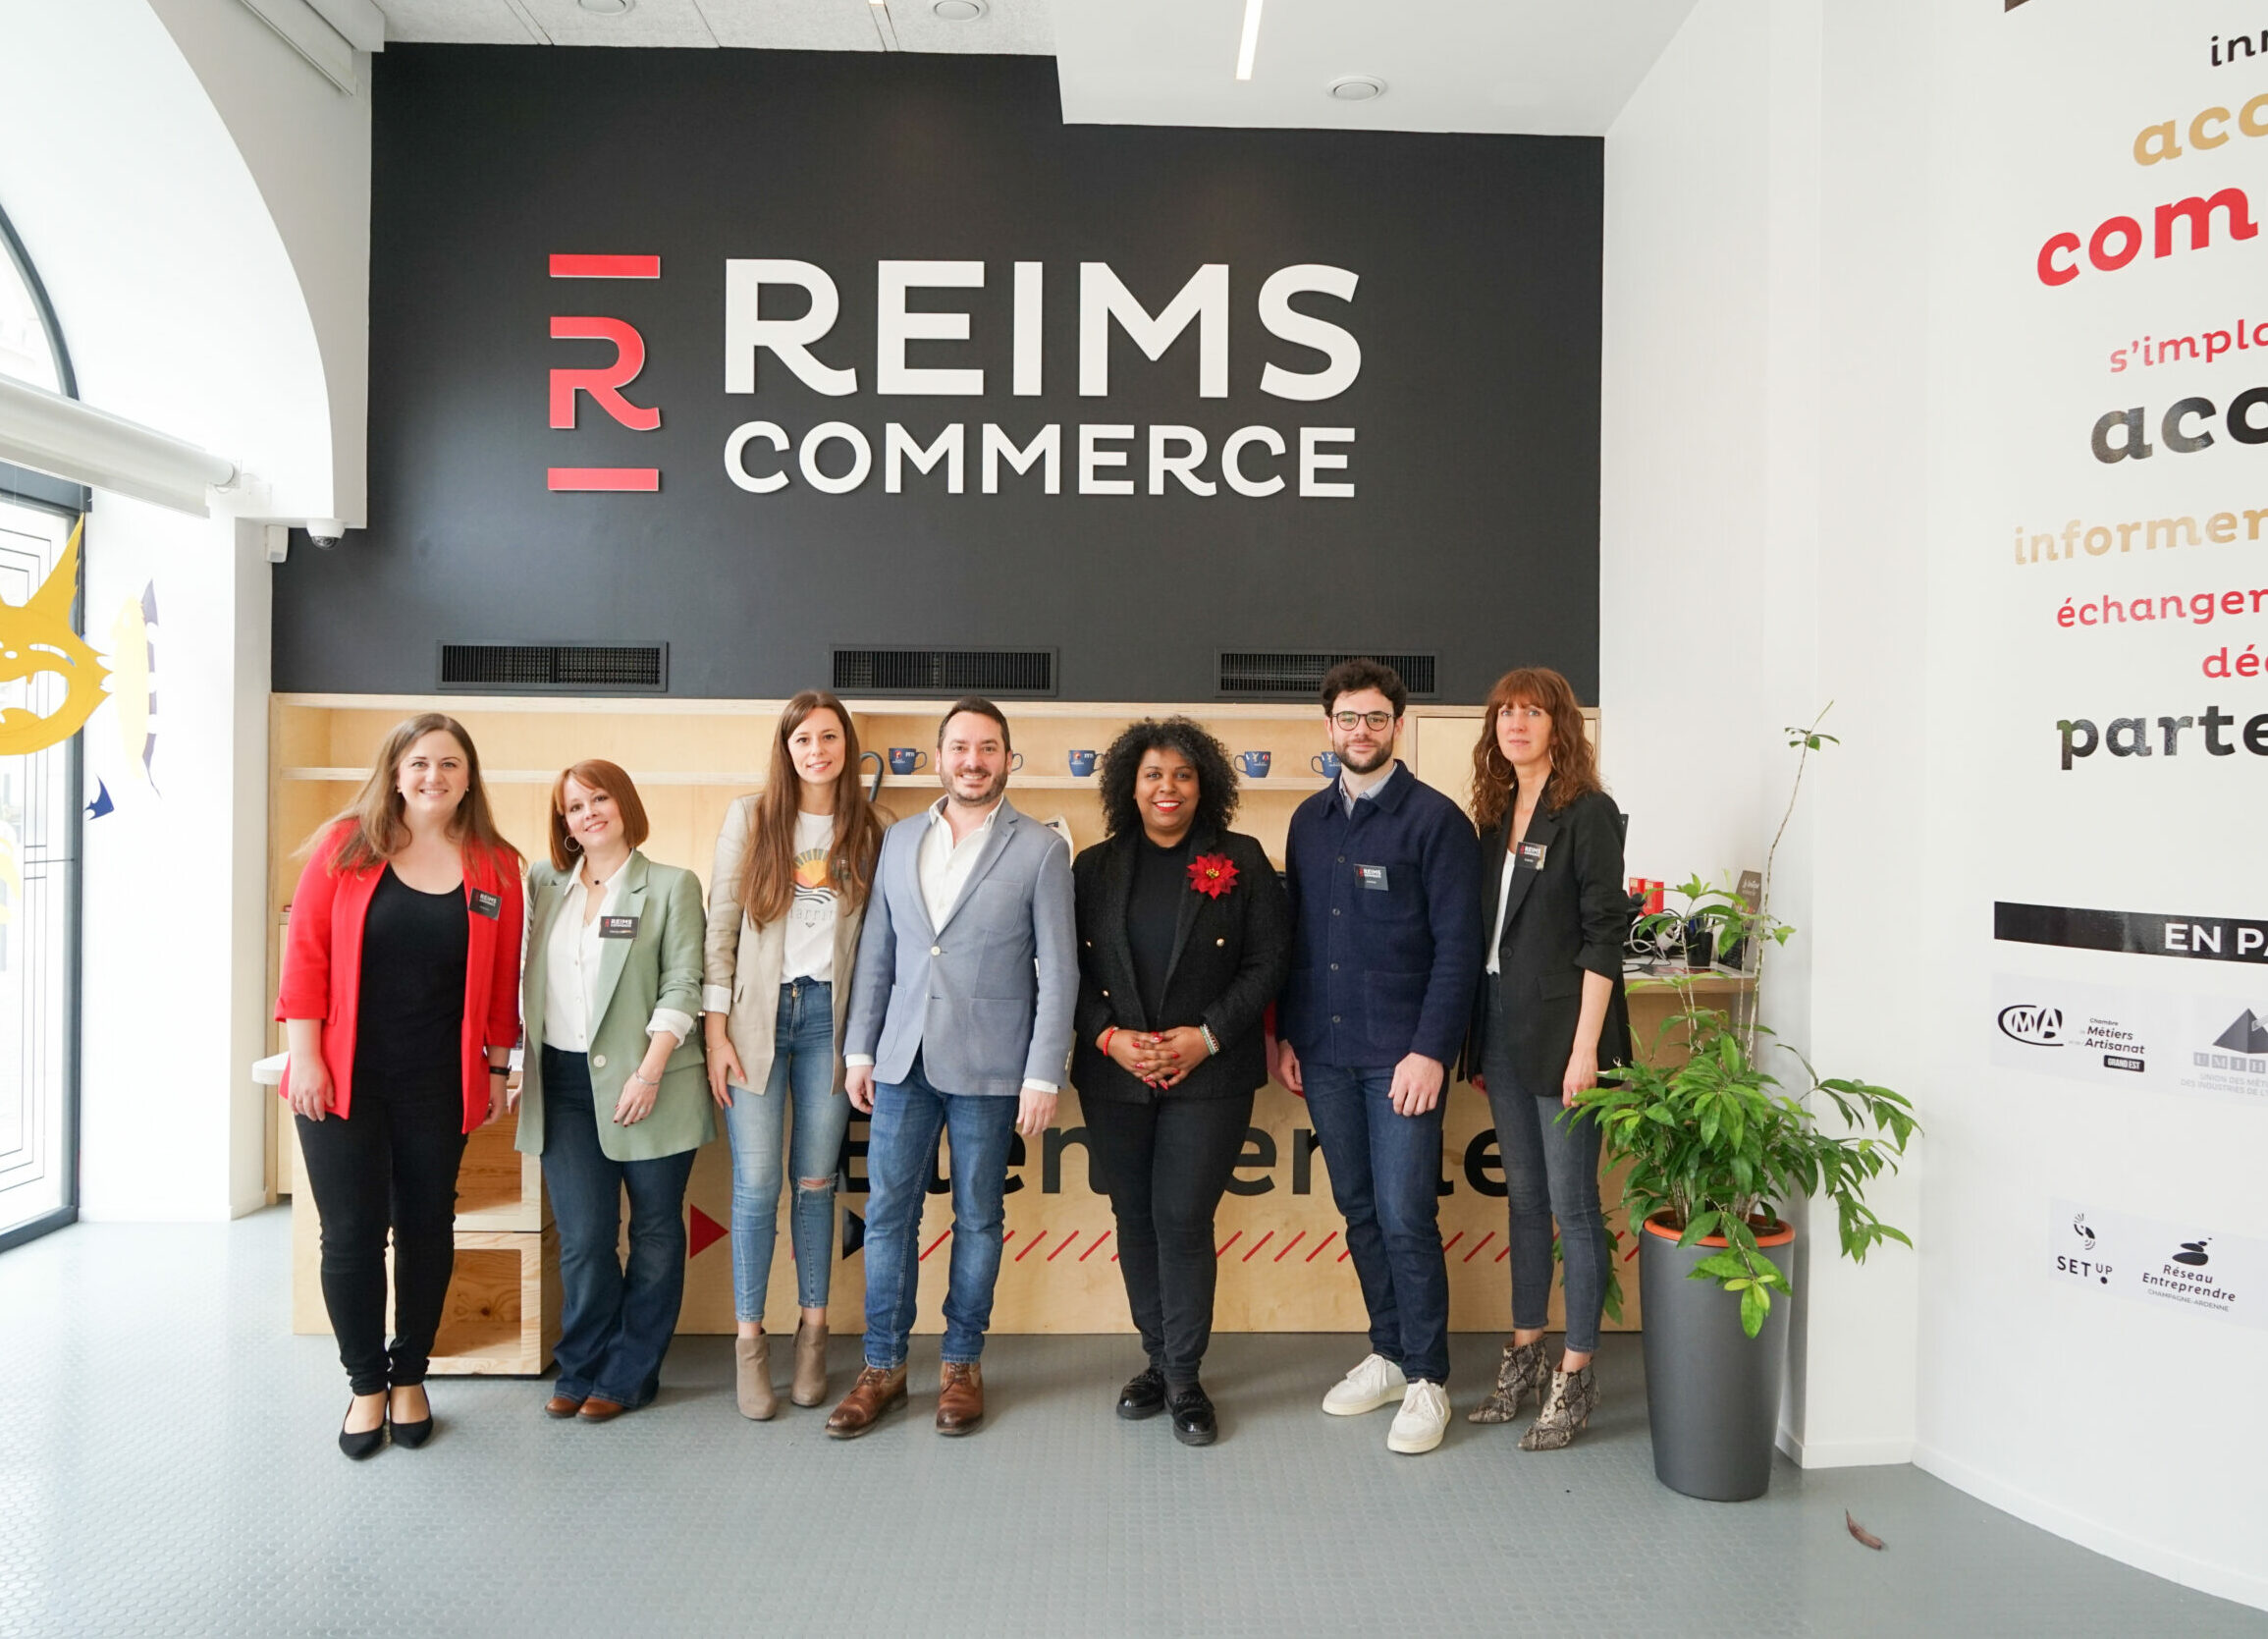 Reims-Commerce-un-espace-unique-en-France-pour-accompagner-les-commercants-et-artisans1